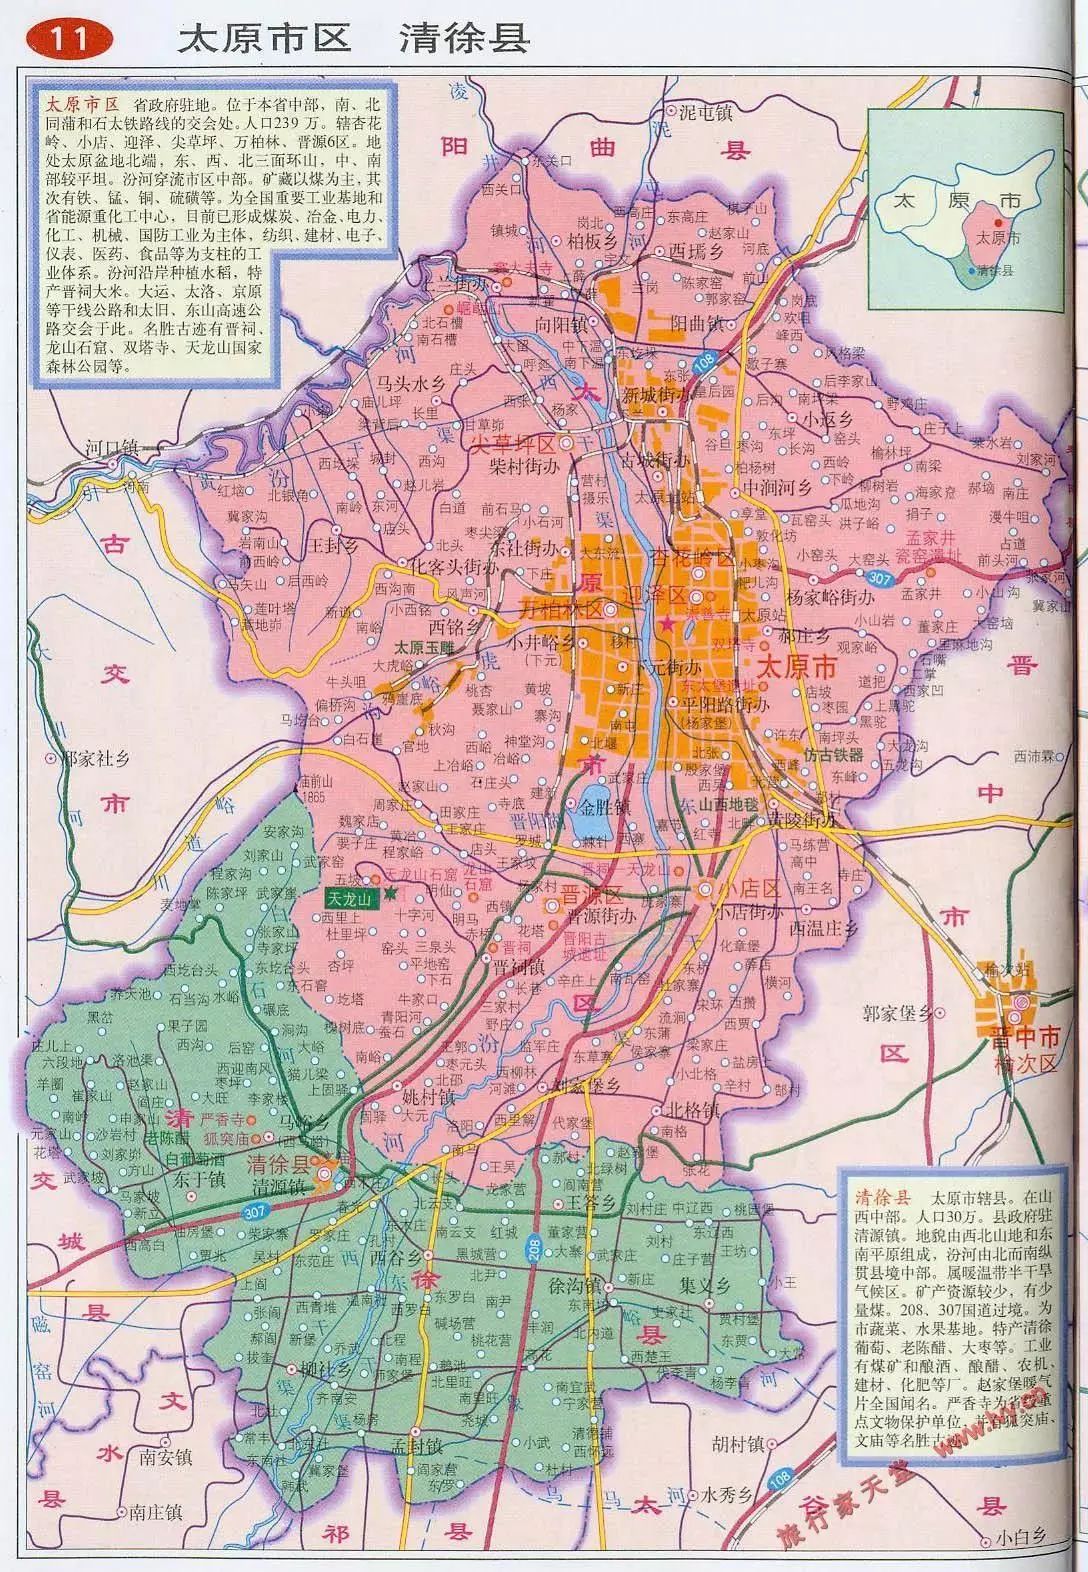 清徐现在是太原市下辖的县